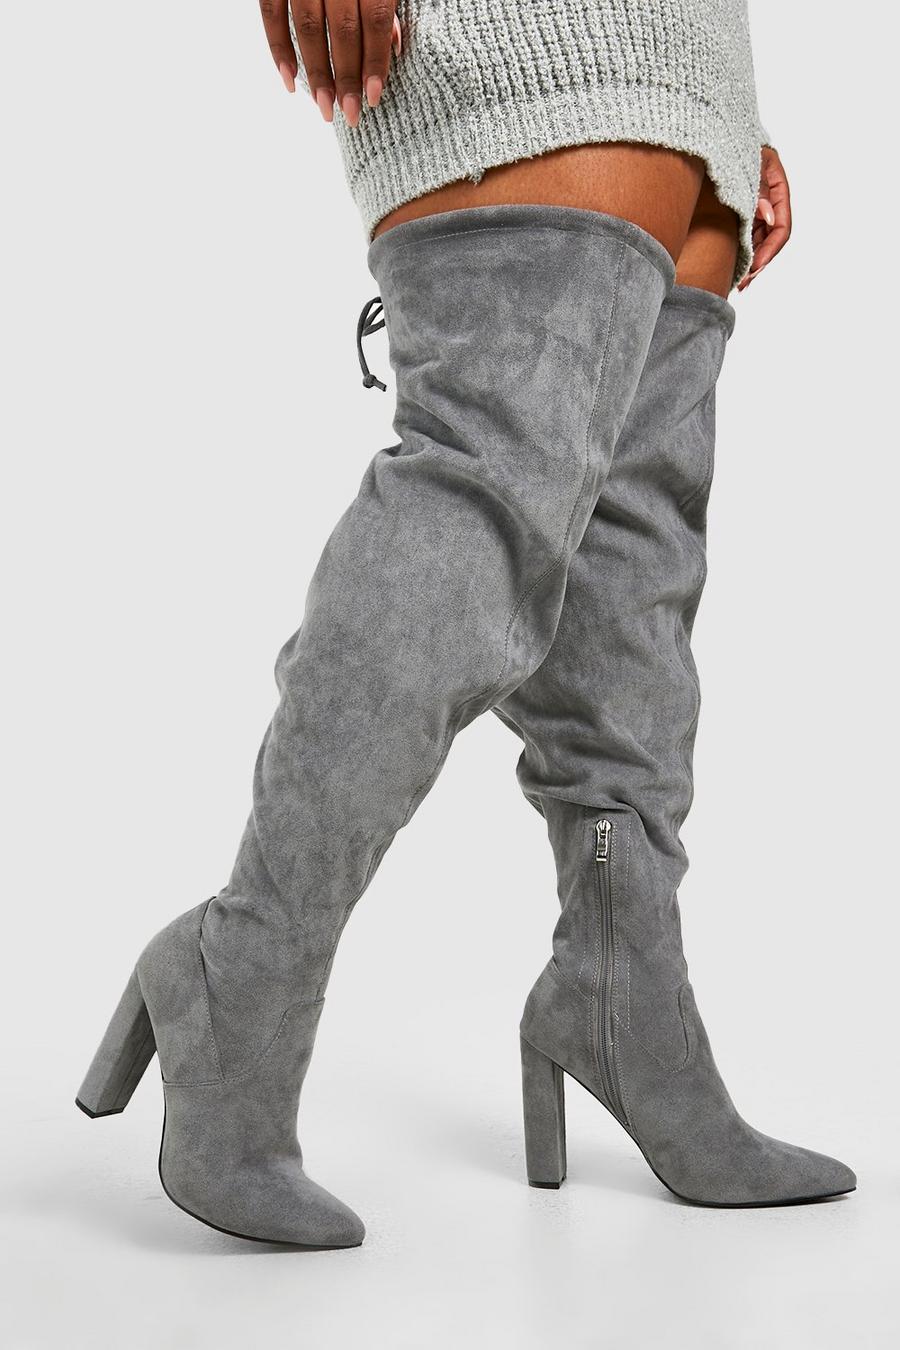 אפור grigio מגפיים בגובה מעל הברך עם קשירה ועקבים, לרגל רחבה